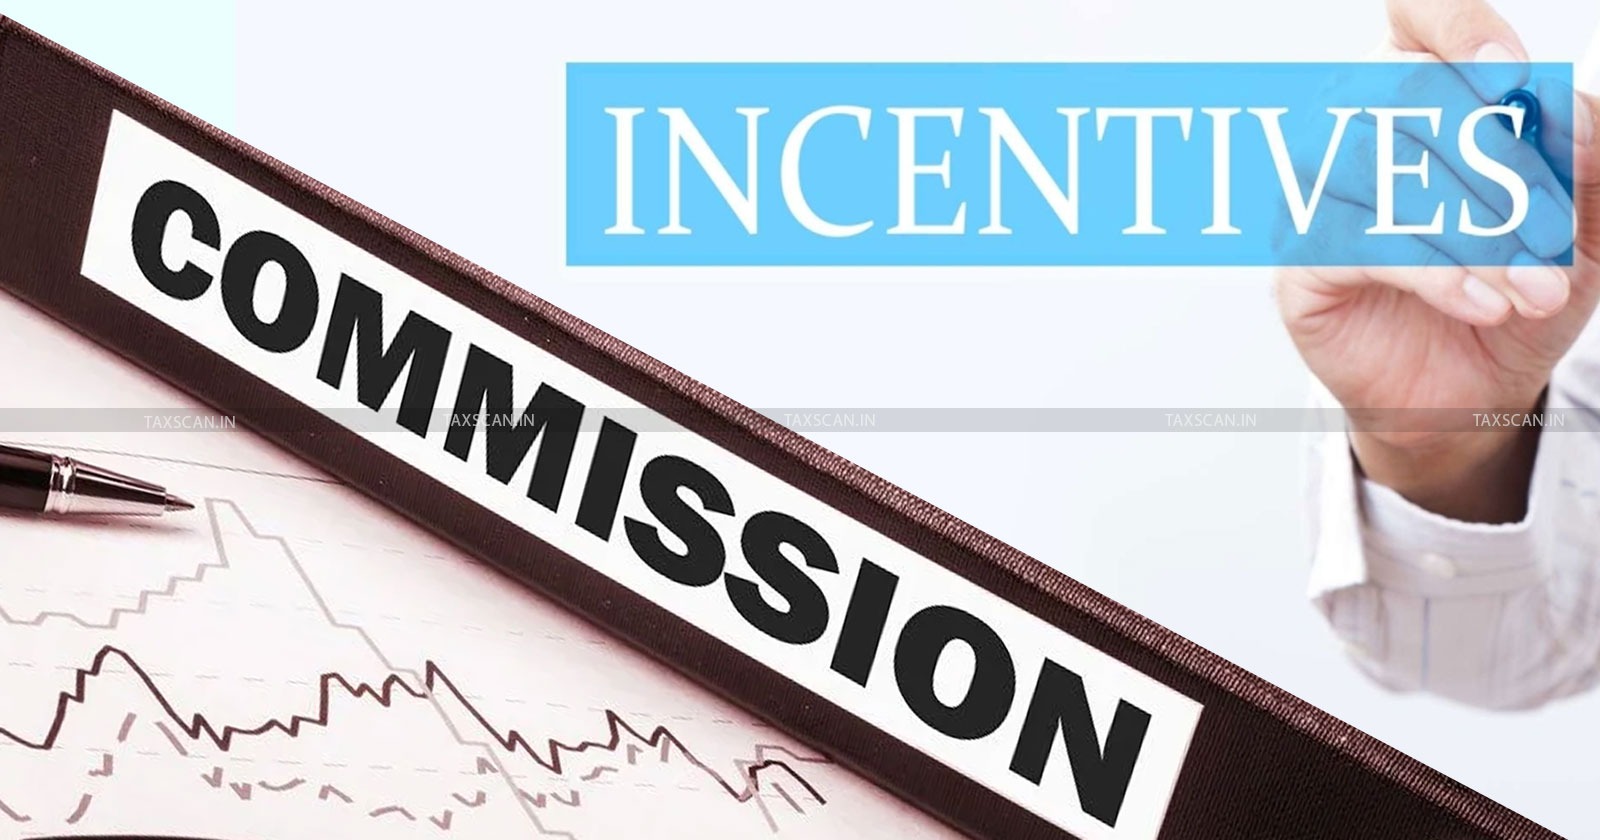 CESTAT Delhi - Incentives - Commission - CESTAT ruling on service tax for incentives - Incentives vs commission in service tax - Taxscan